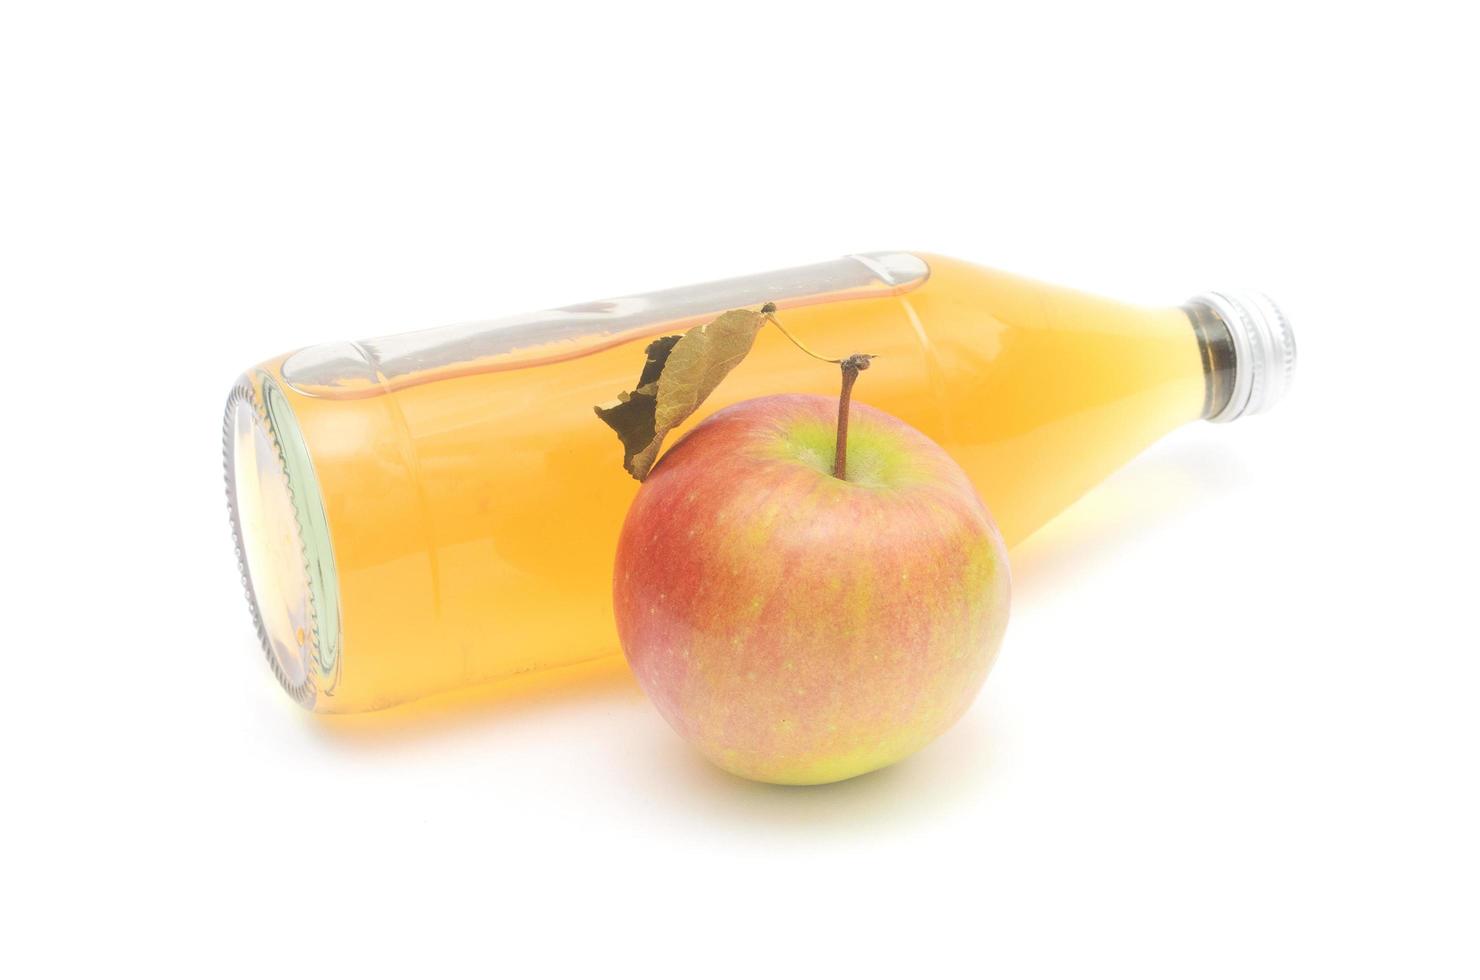 een hele appel met blad en een liegende fles appelciderazijn geïsoleerd op een witte achtergrond. foto